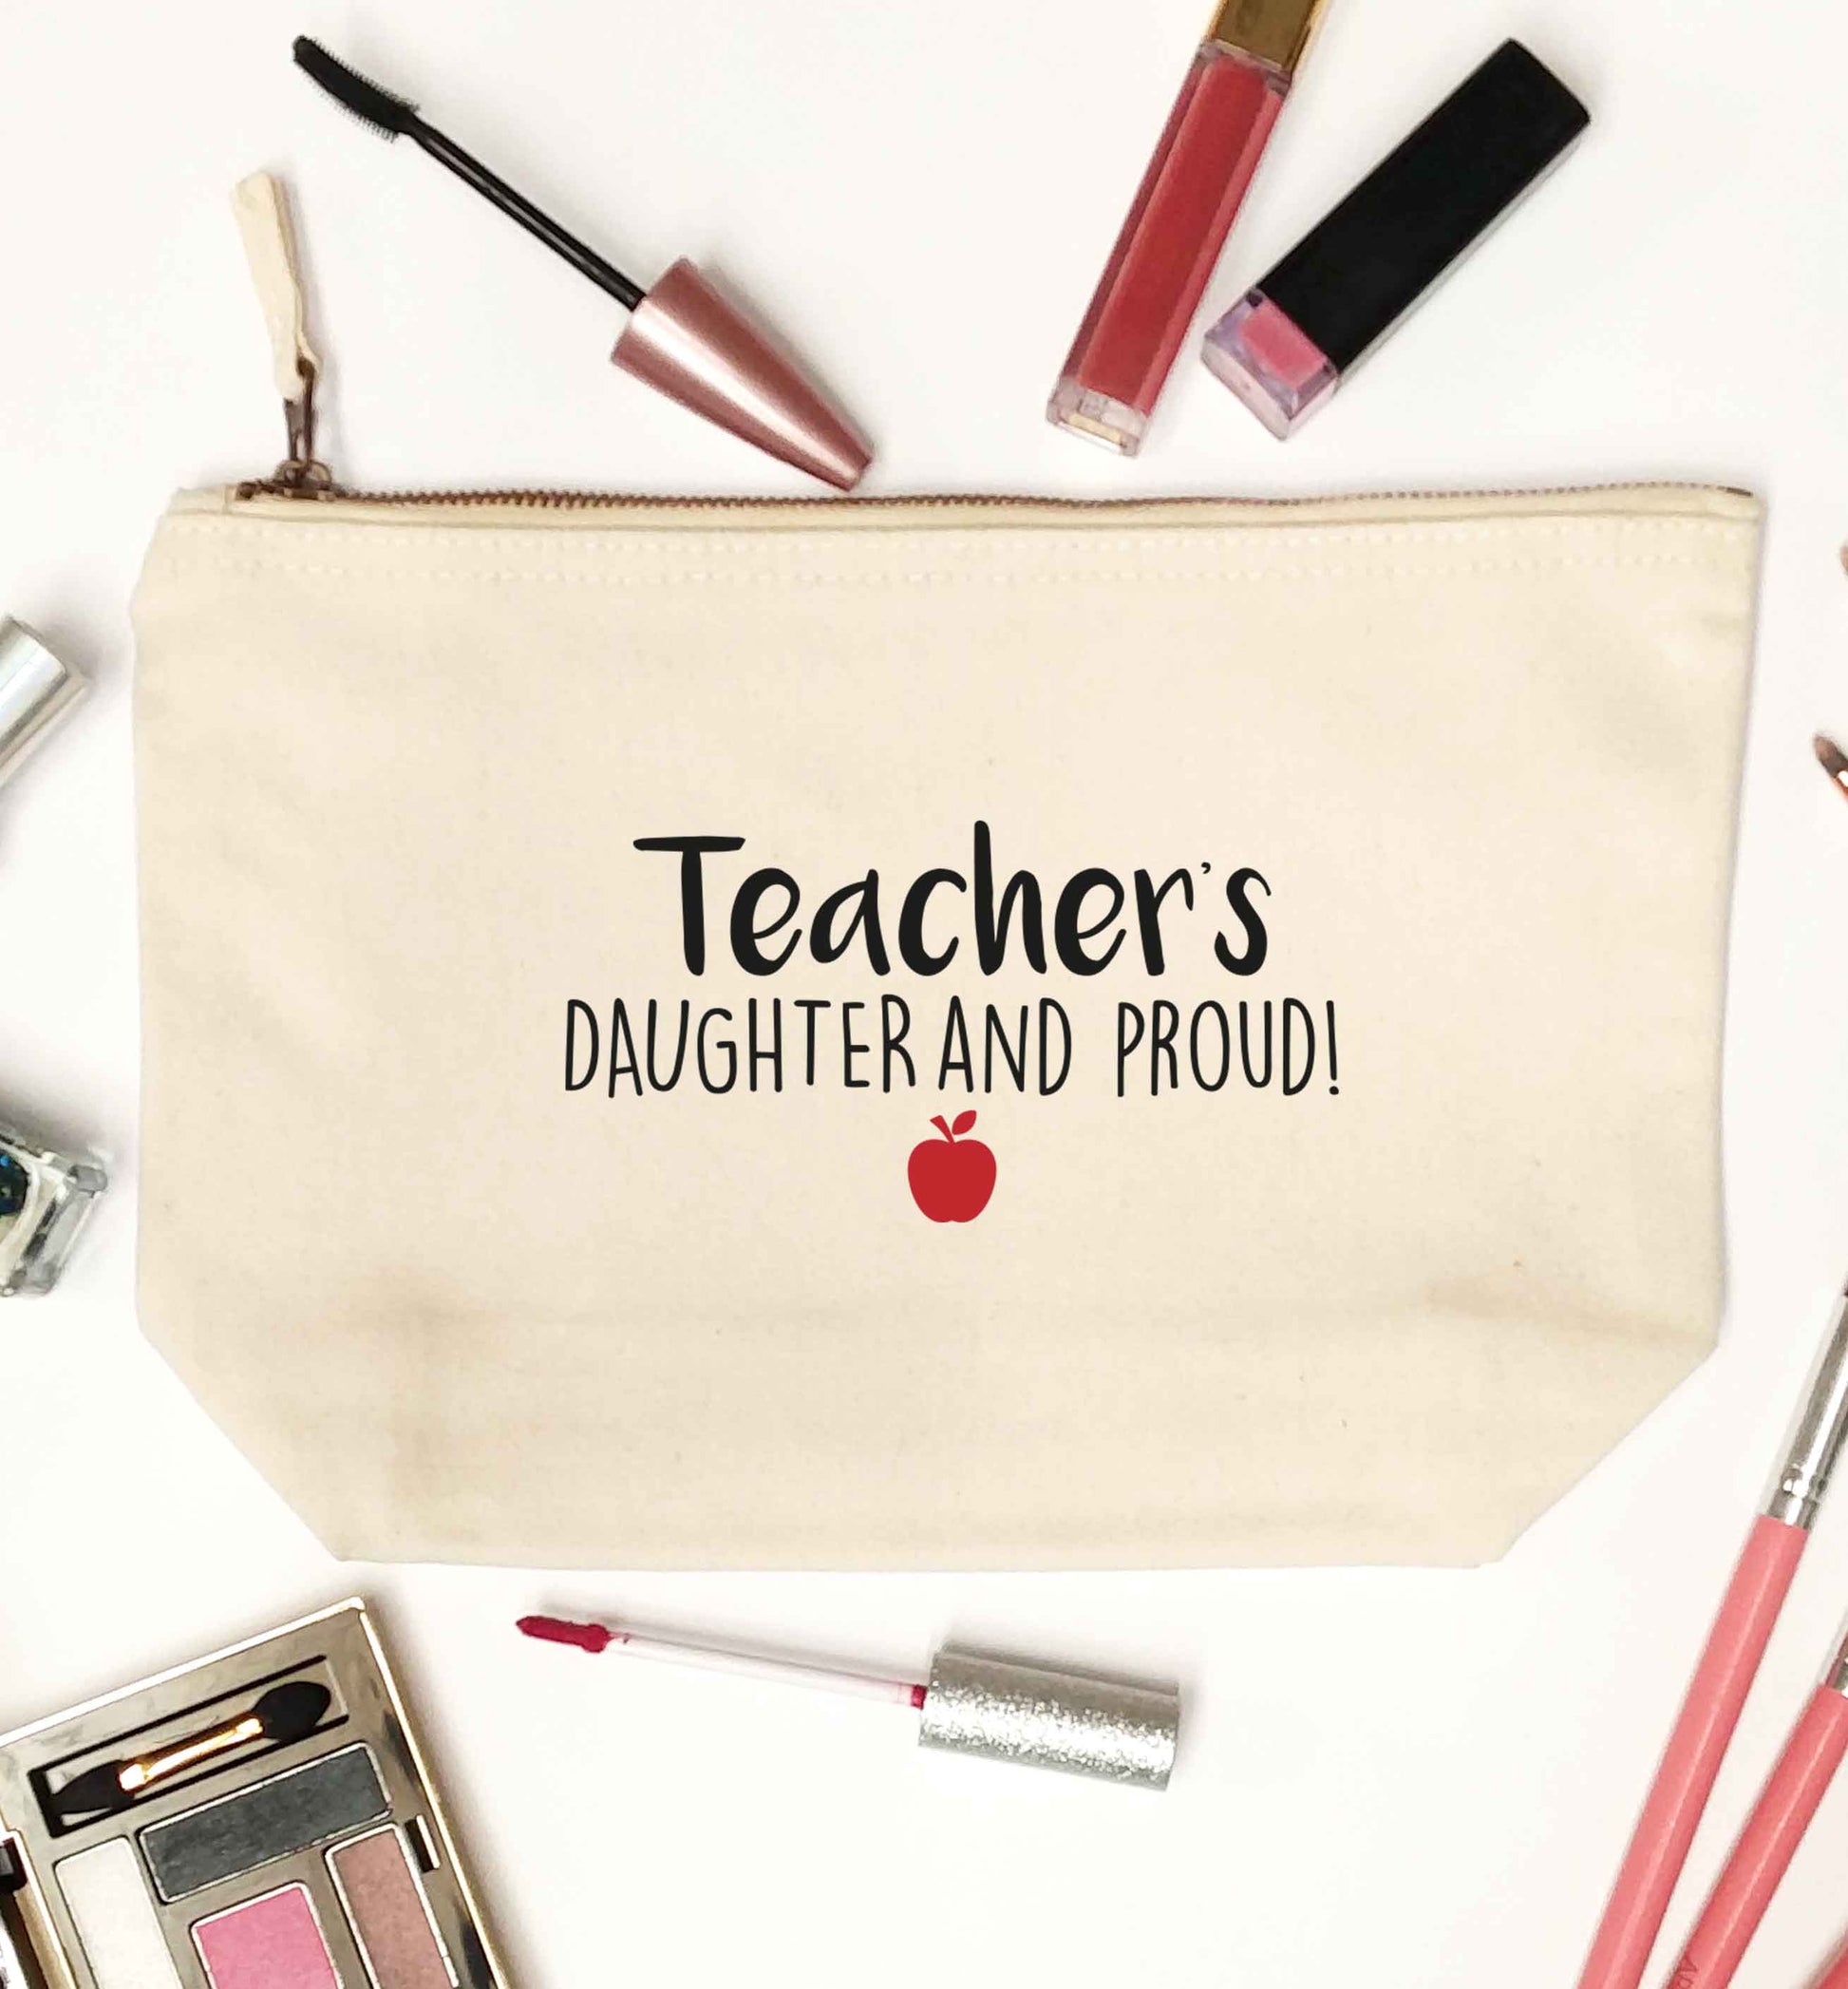 Teachers daughter and proud natural makeup bag